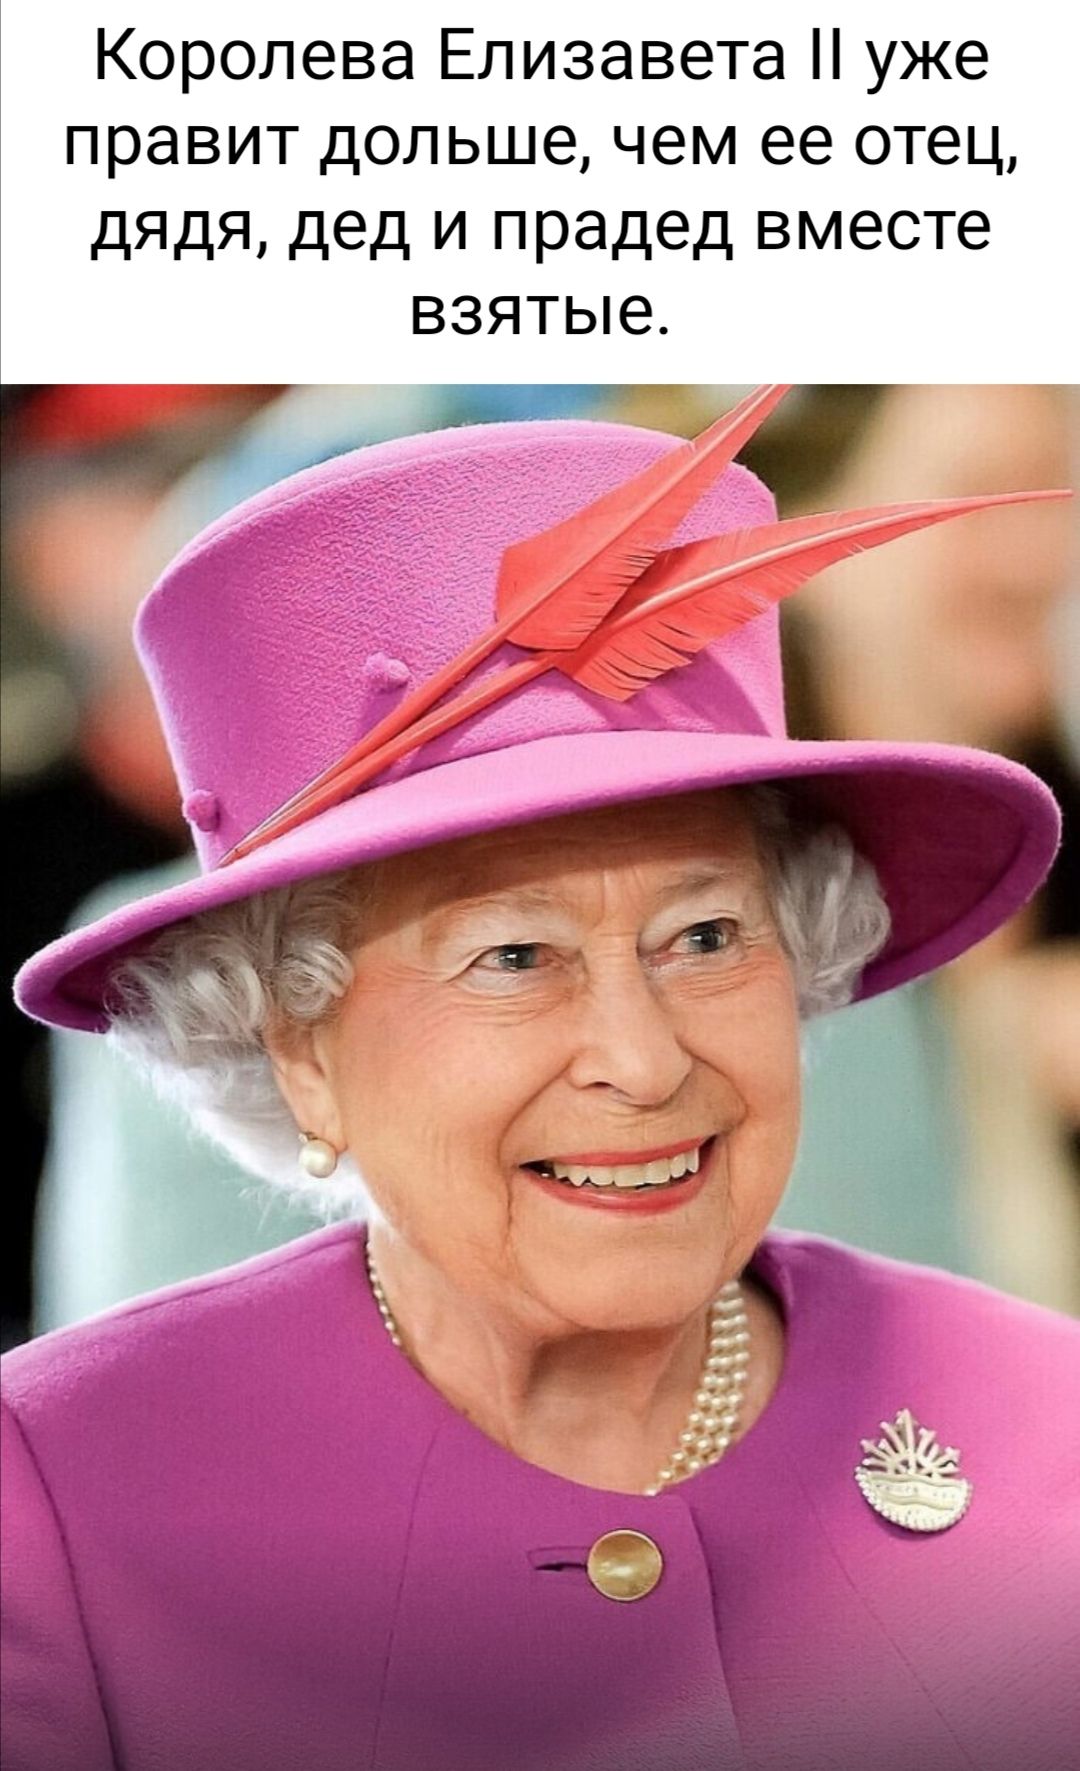 Королева Елизавета уже правит дольше чем ее отец дядя дед и прадед вместе взятые